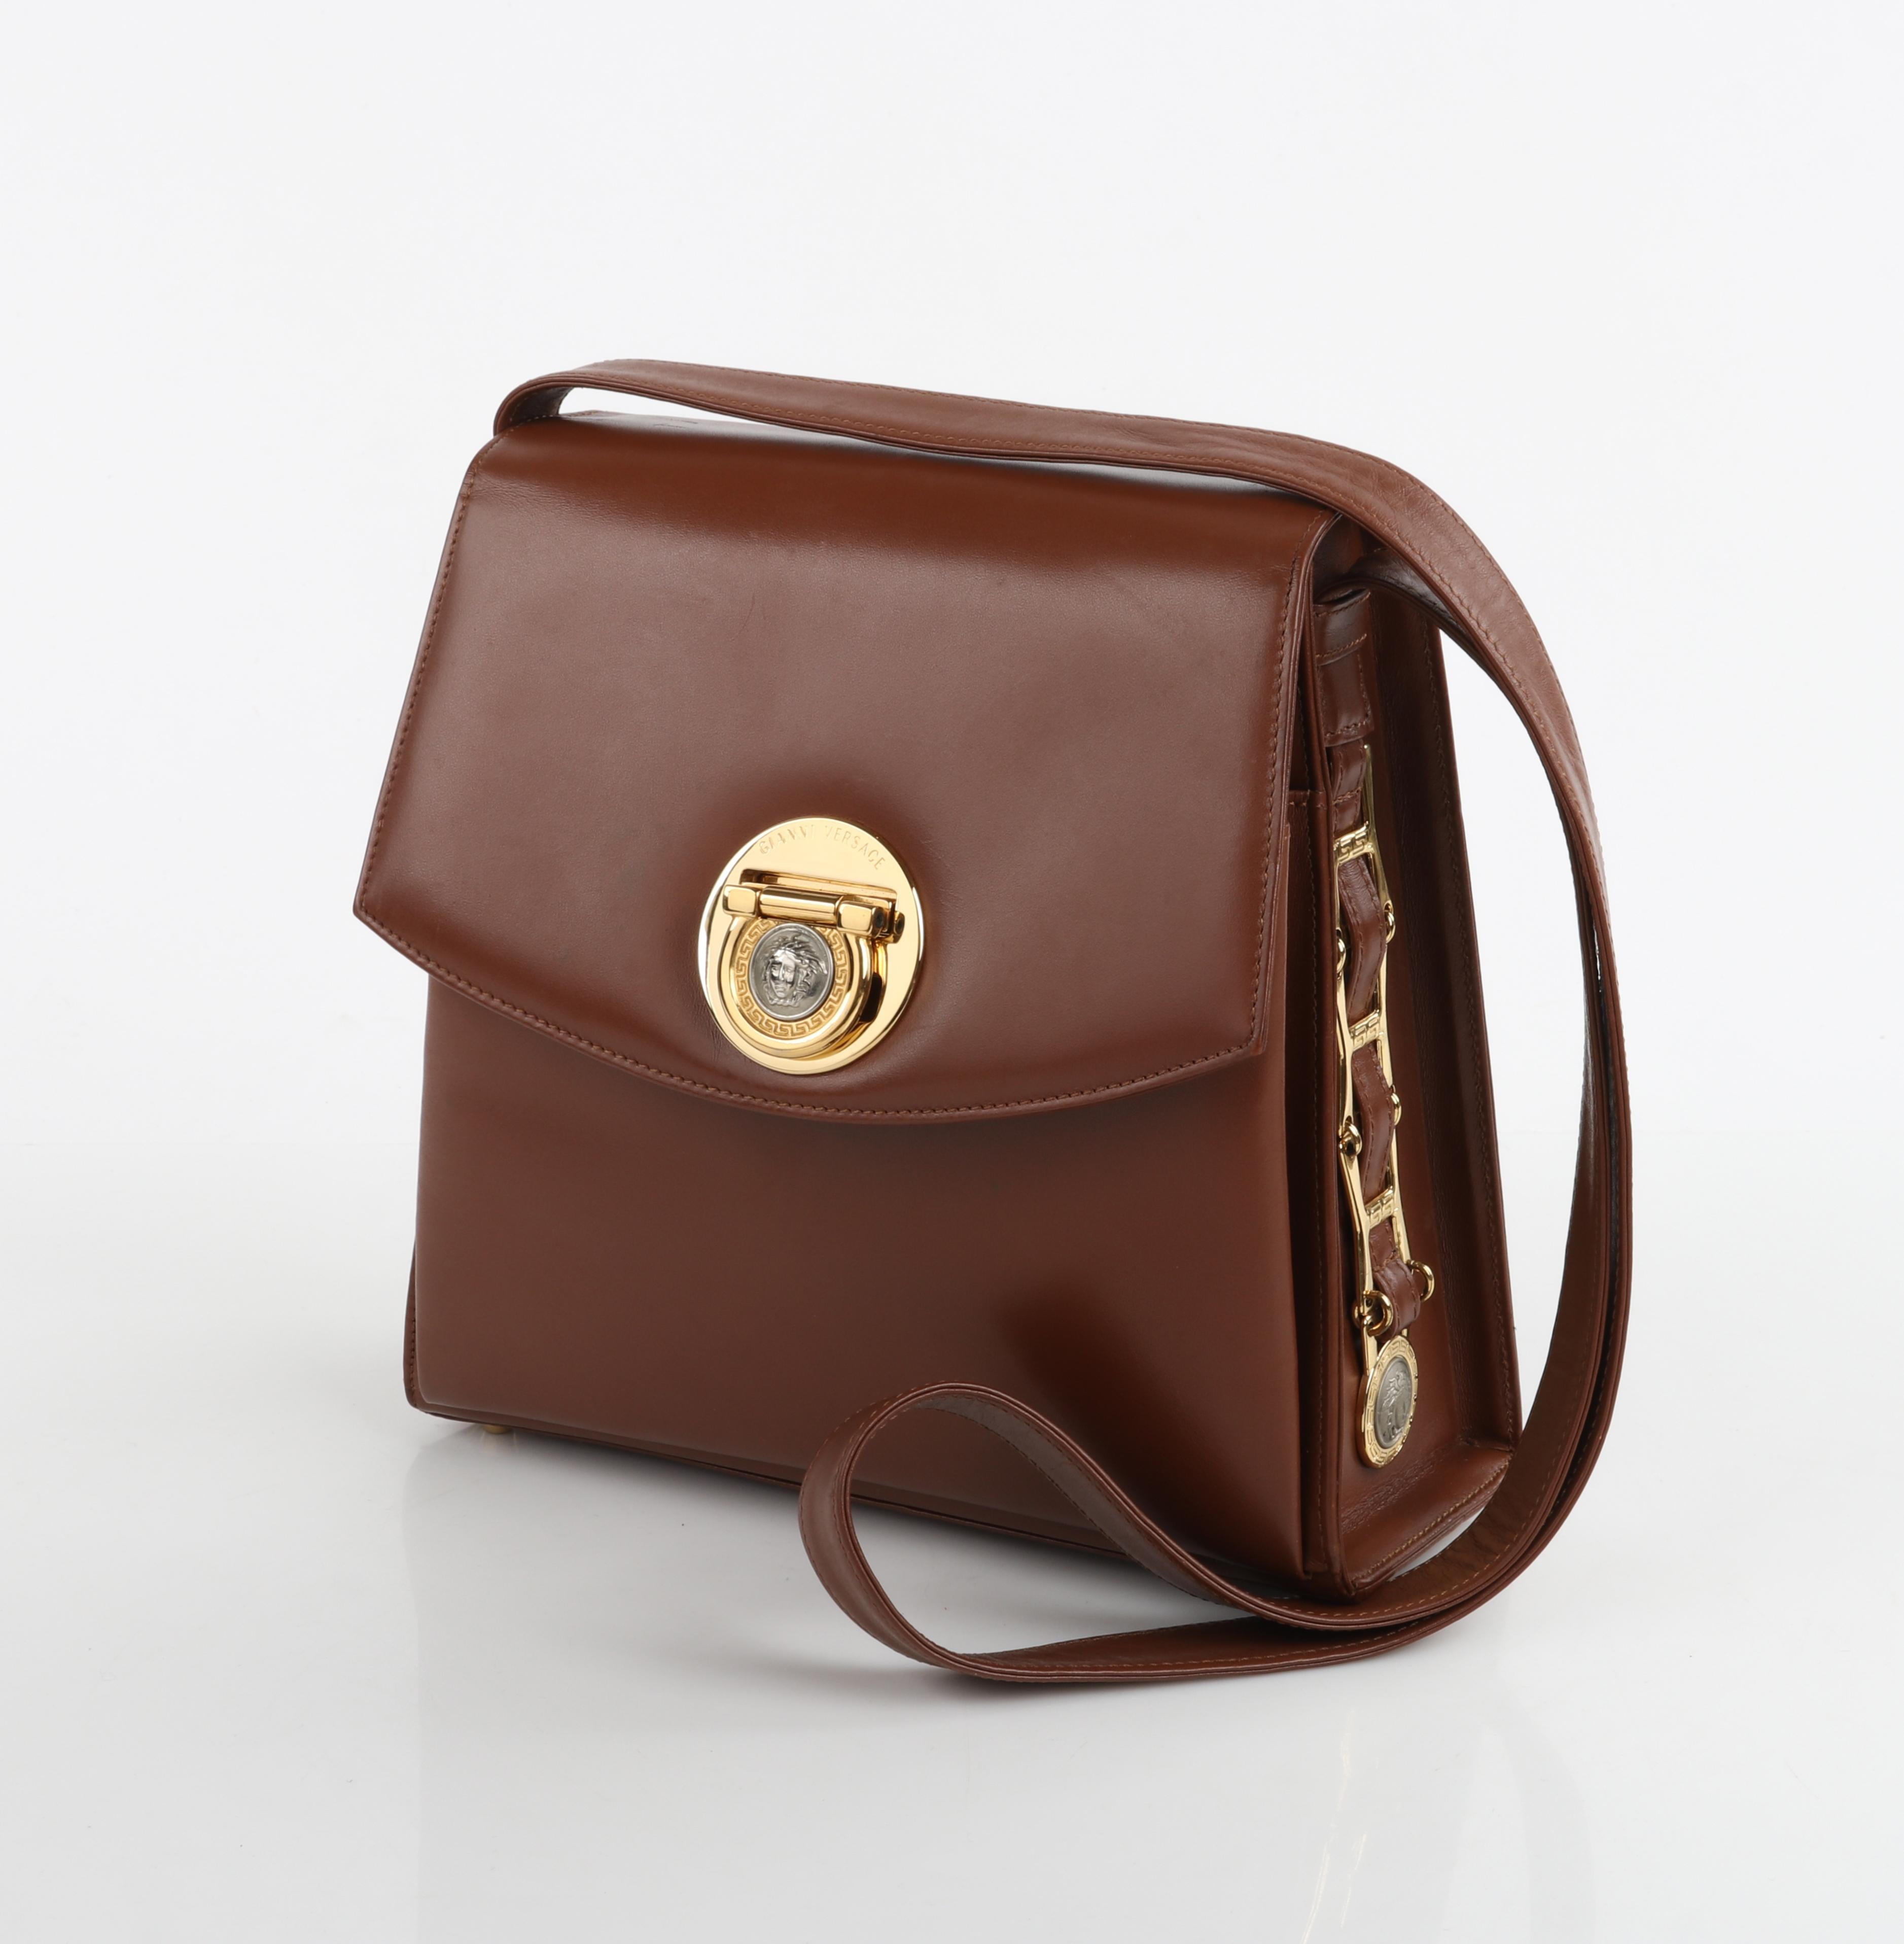 GIANNI VERSACE c.1993 Brown Leather Medusa Emblem Coin Lock Shoulder Bag Purse For Sale 1